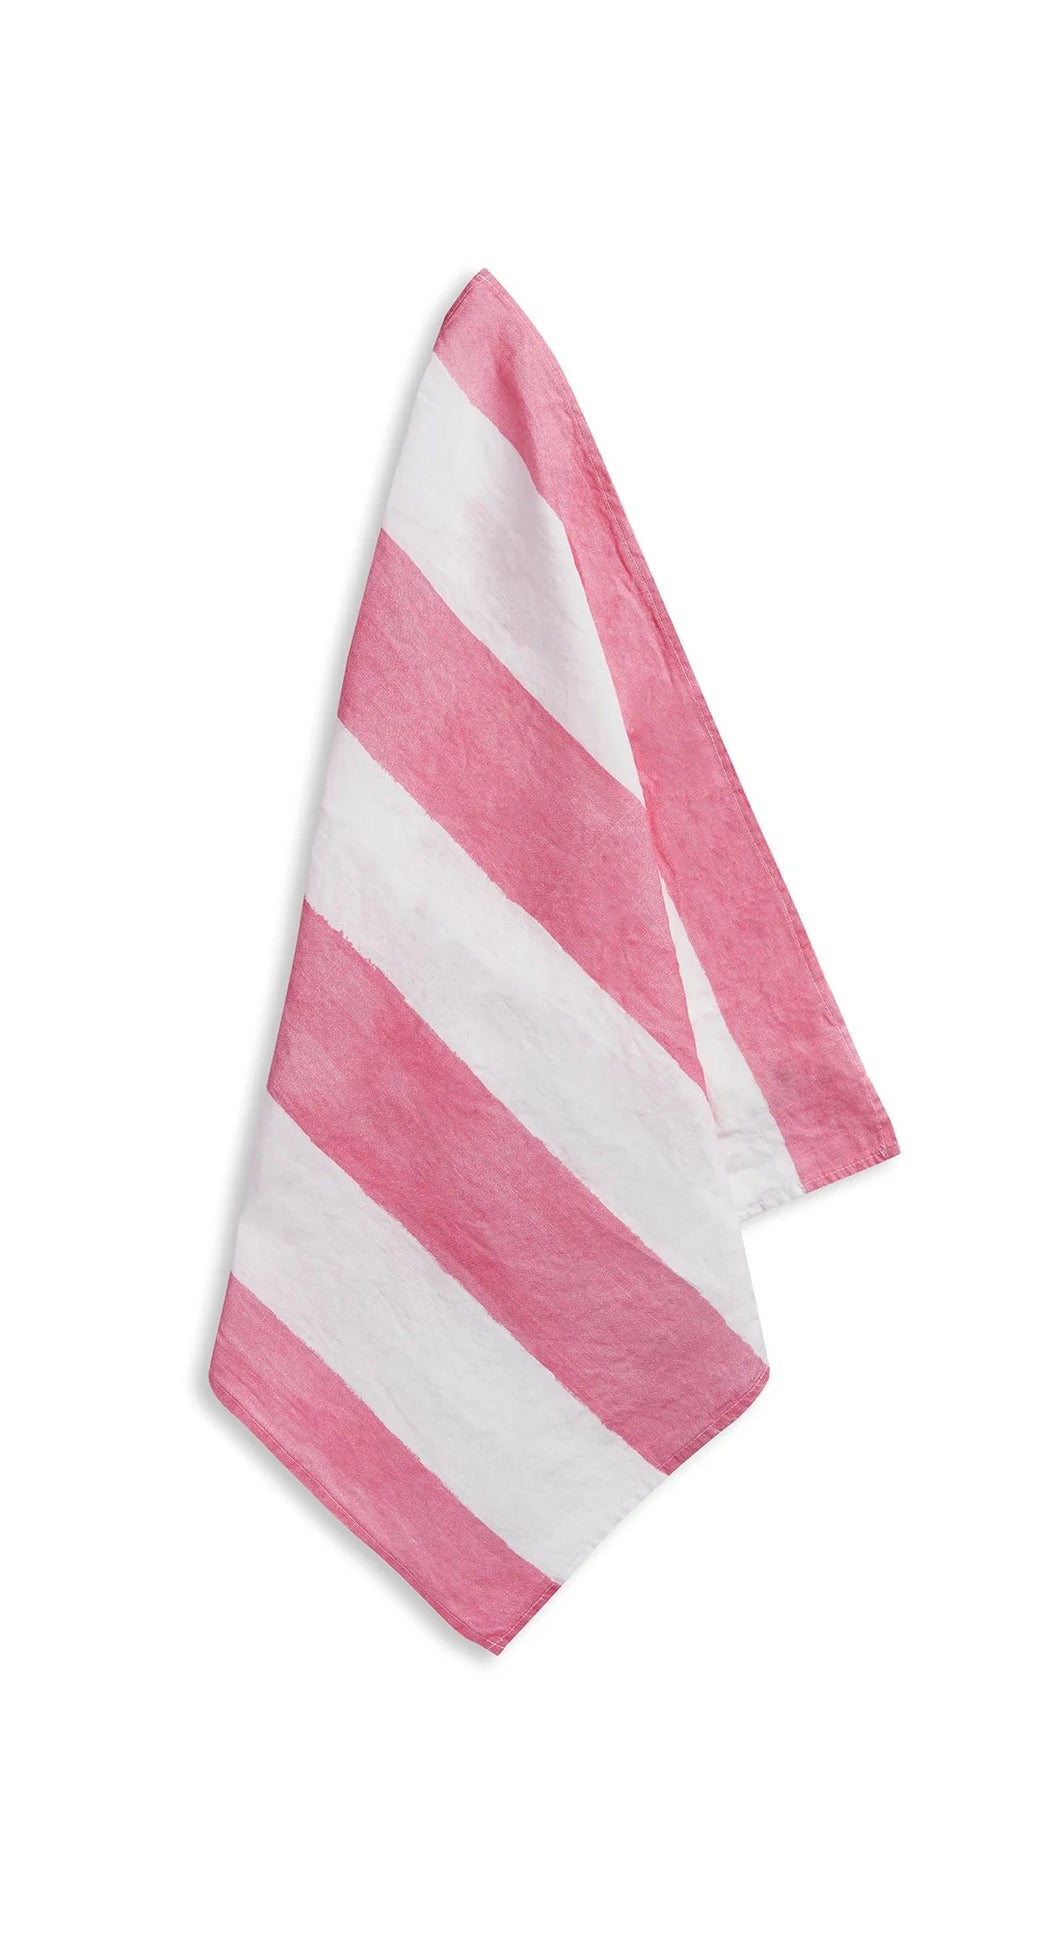 Stripe Linen Napkin - Pink & White